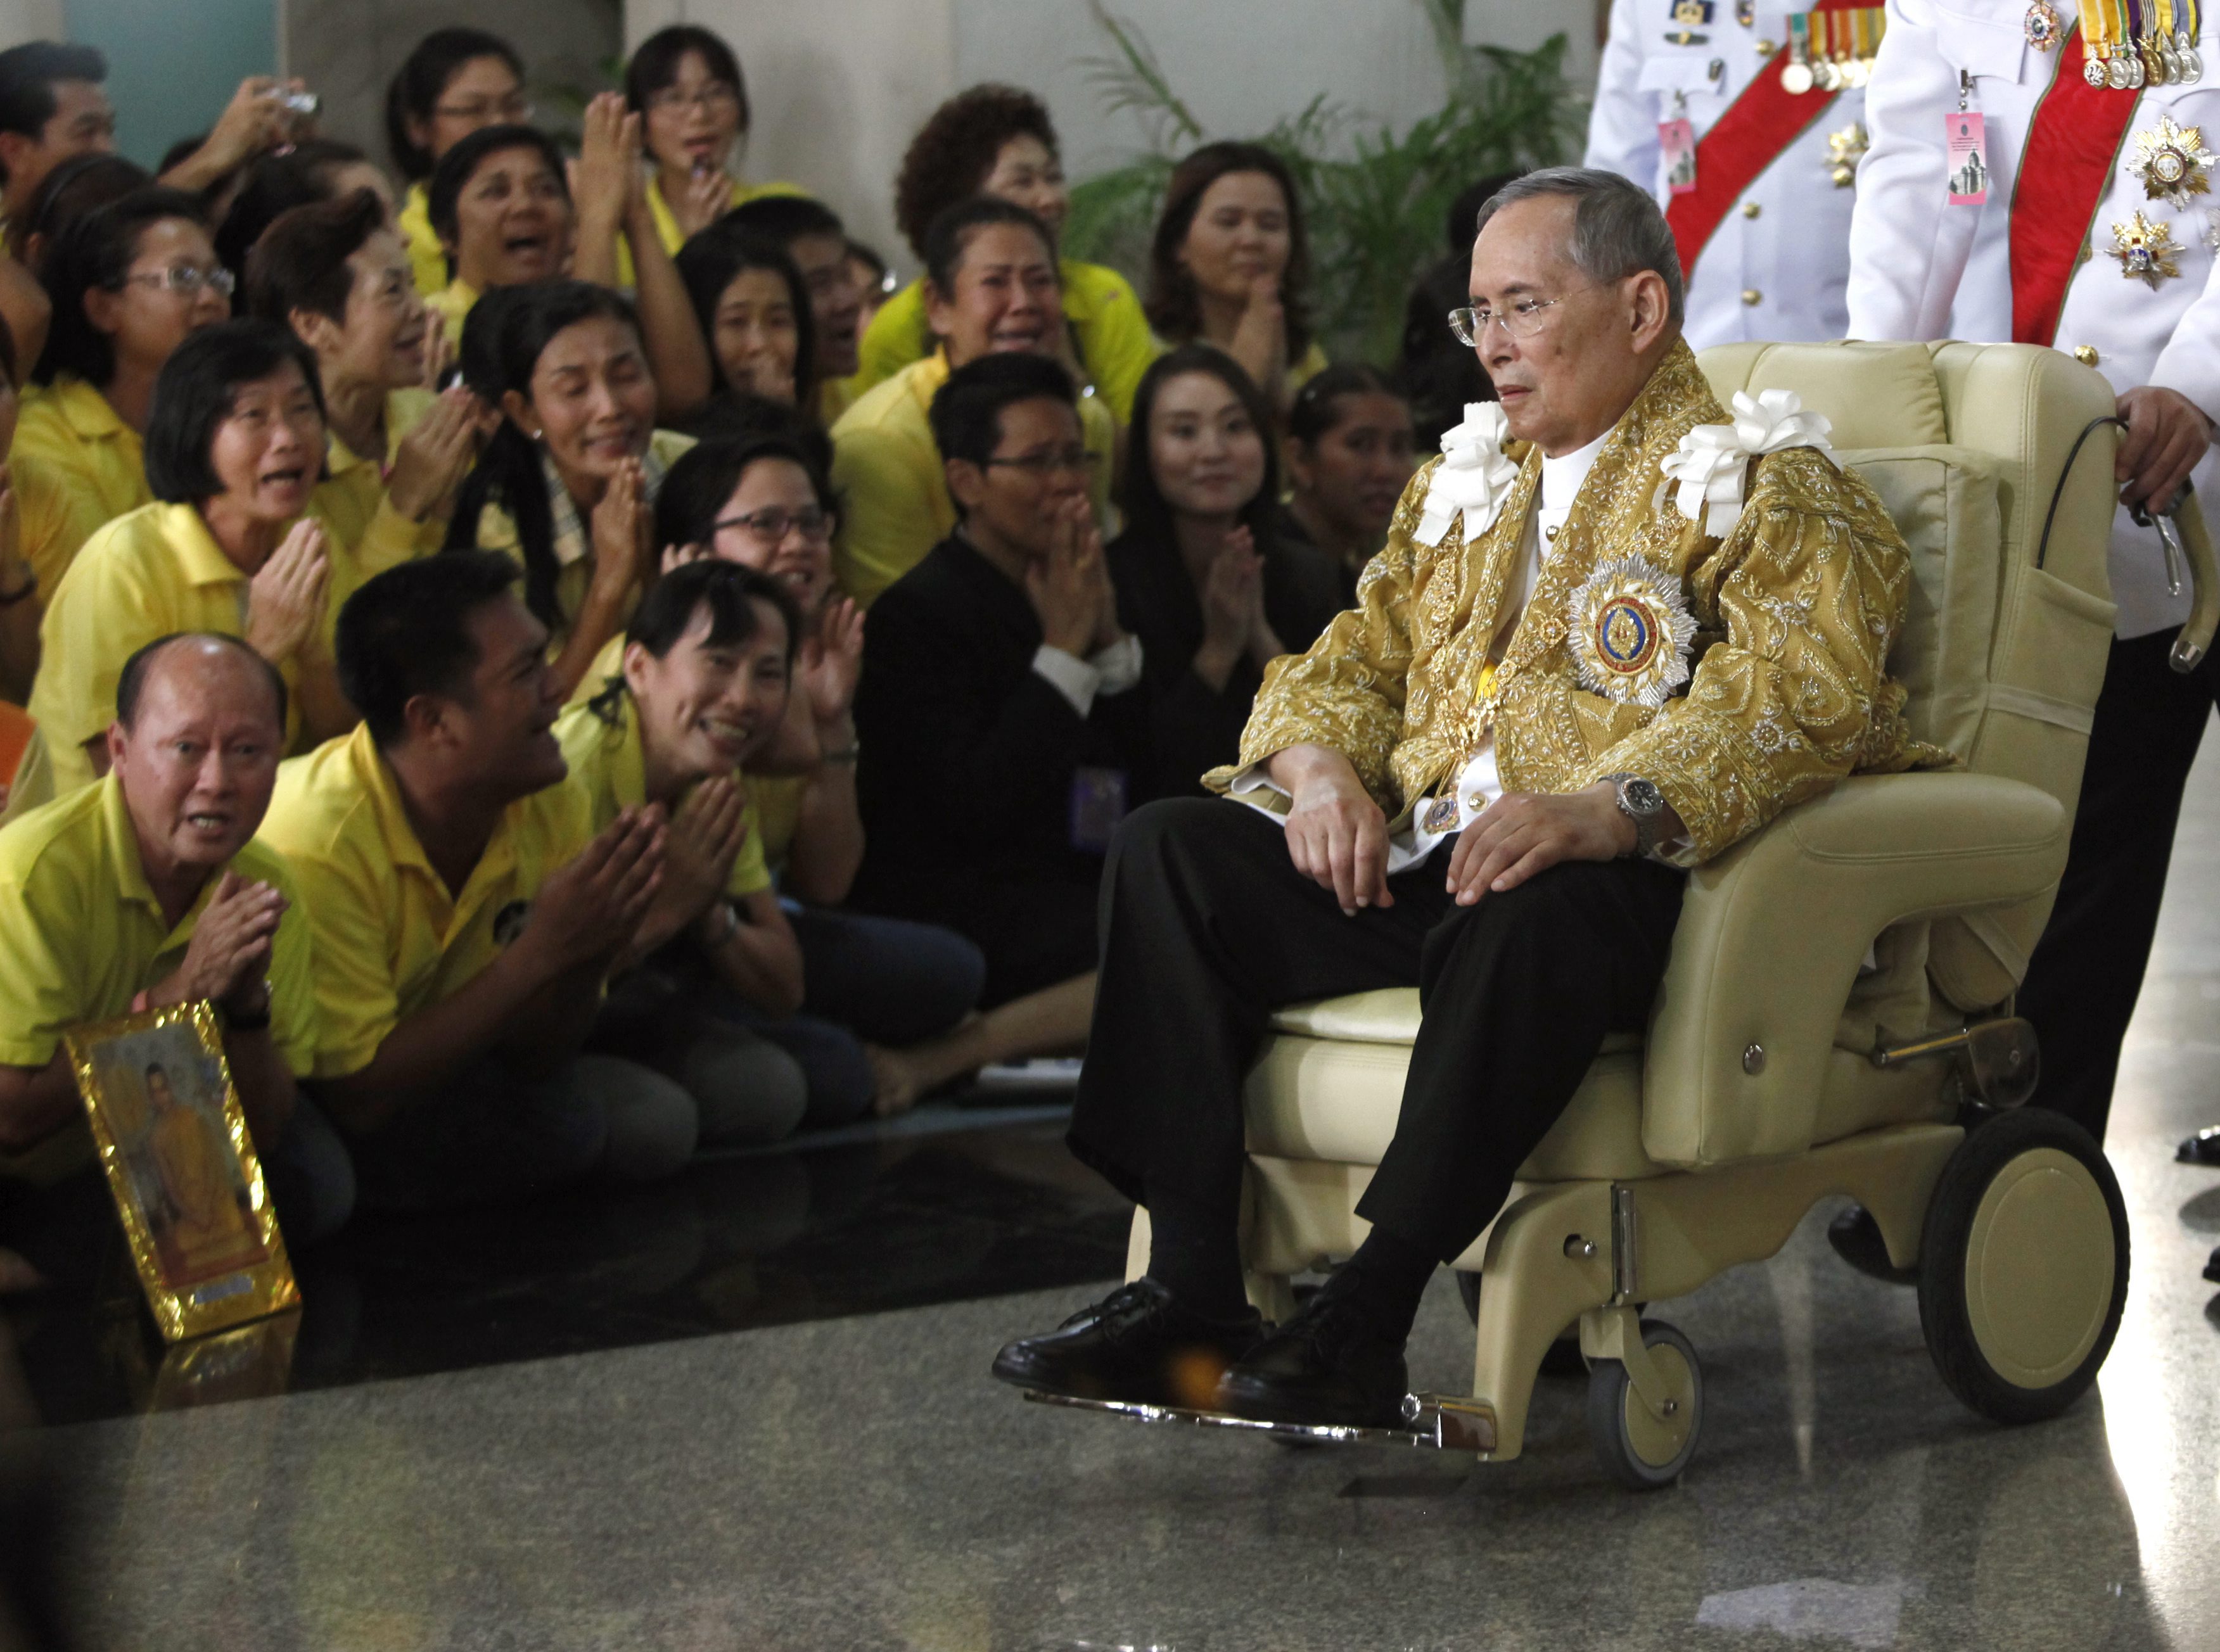 Кралят на Тайланд Пхумипхон Адунядет почина след дълго боледуване, съобщиха от двореца. Той е най-дълго управлявалият и най-богатият монарх в света, стоял 70 години на трона със състояние от 32 млрд. долара.